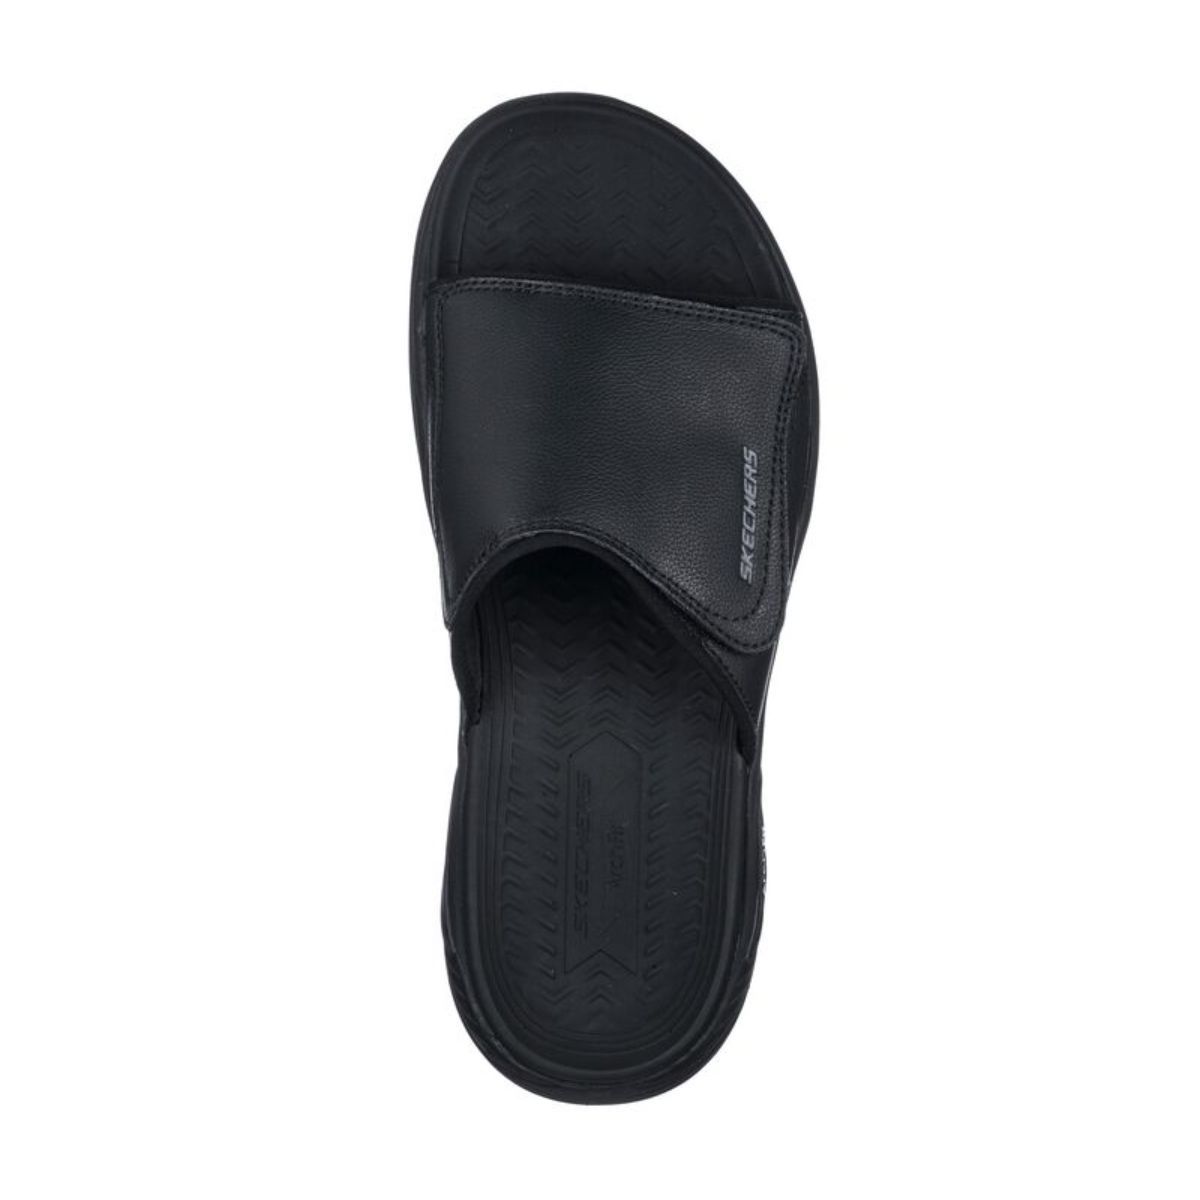 Men's Sandals | Leather Sandals & Flip Flops | SKECHERS UK